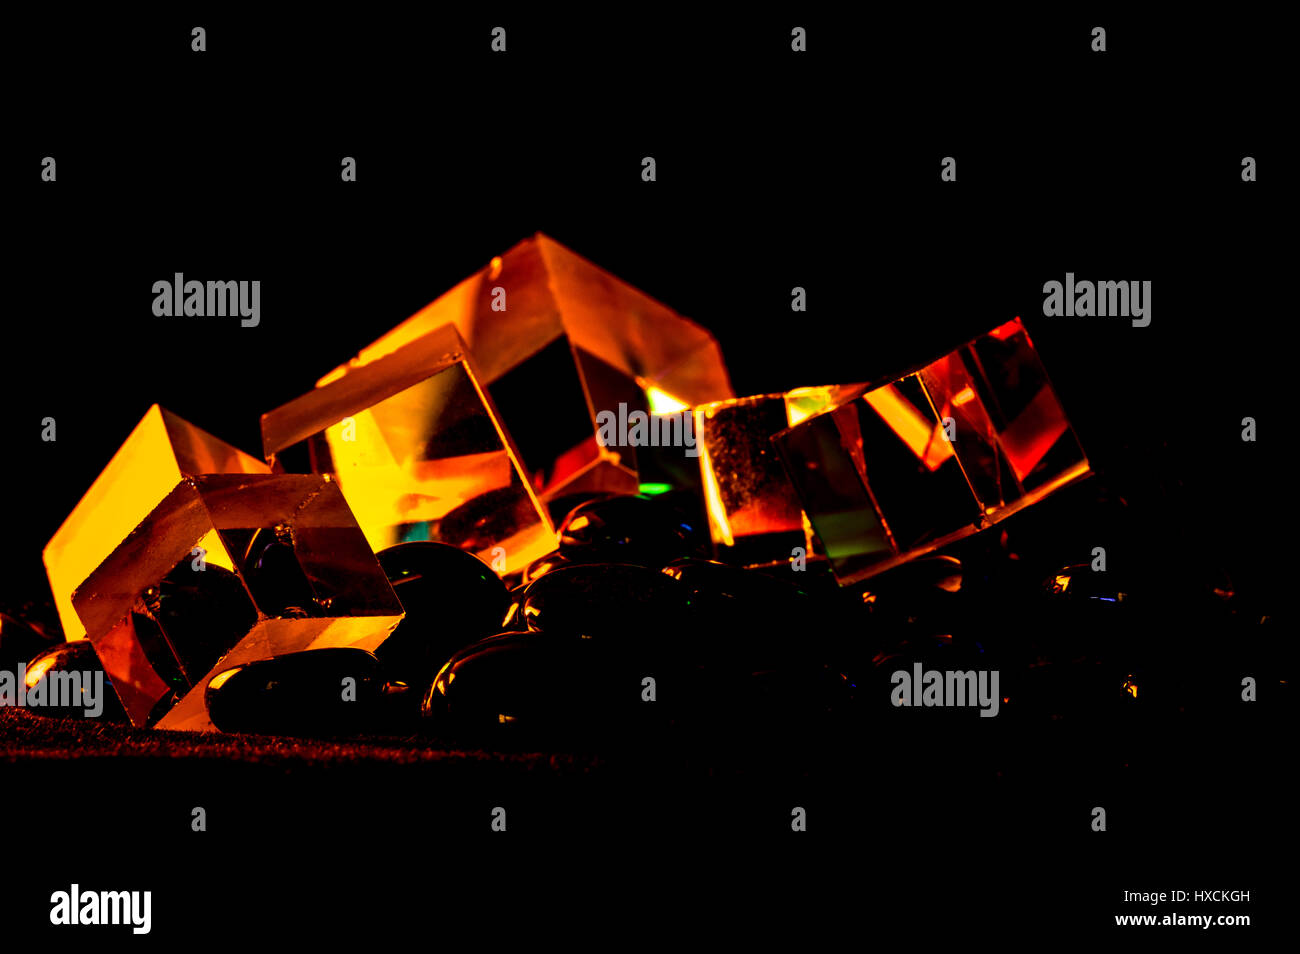 Cubi astratto concetto riflettente prisma luminosi colori di sfondo univoco Foto Stock